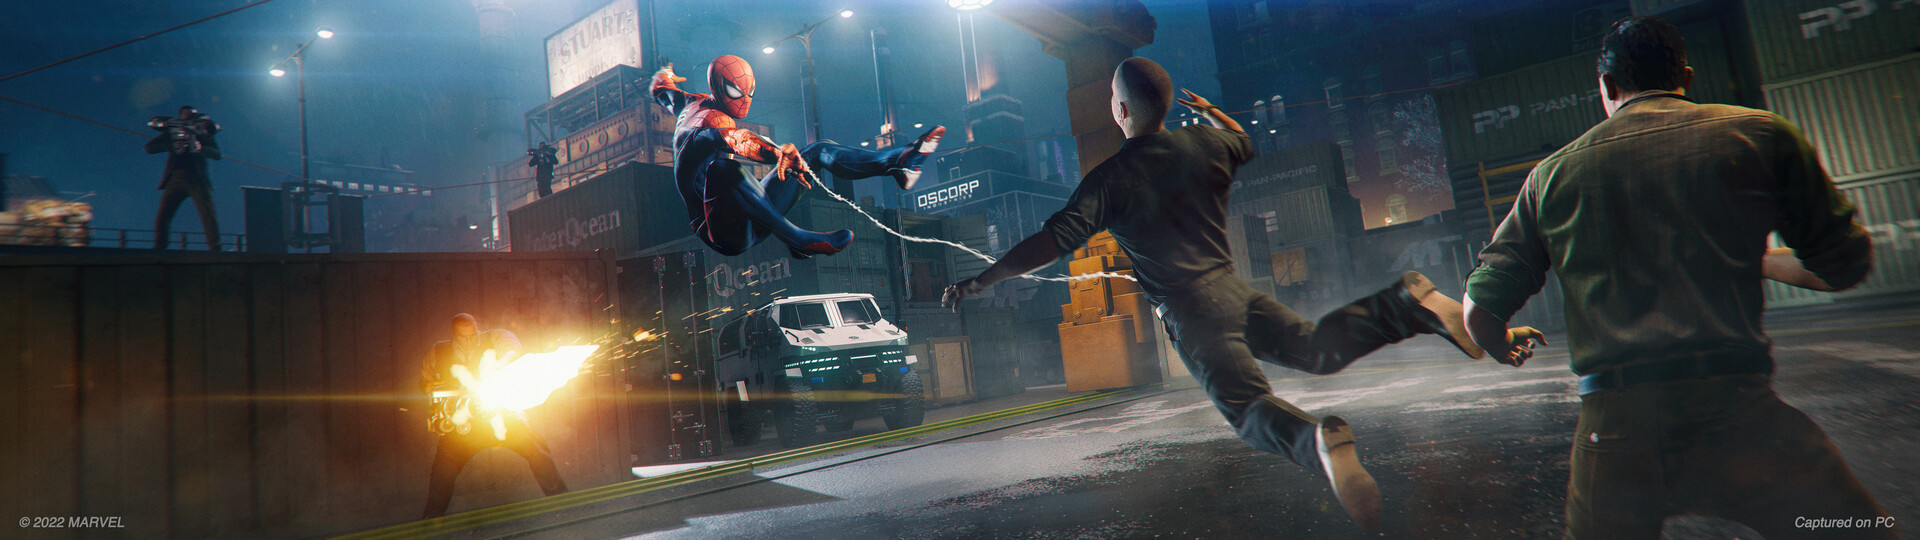 Marvel's Spider-Man Remastered, PC - Steam